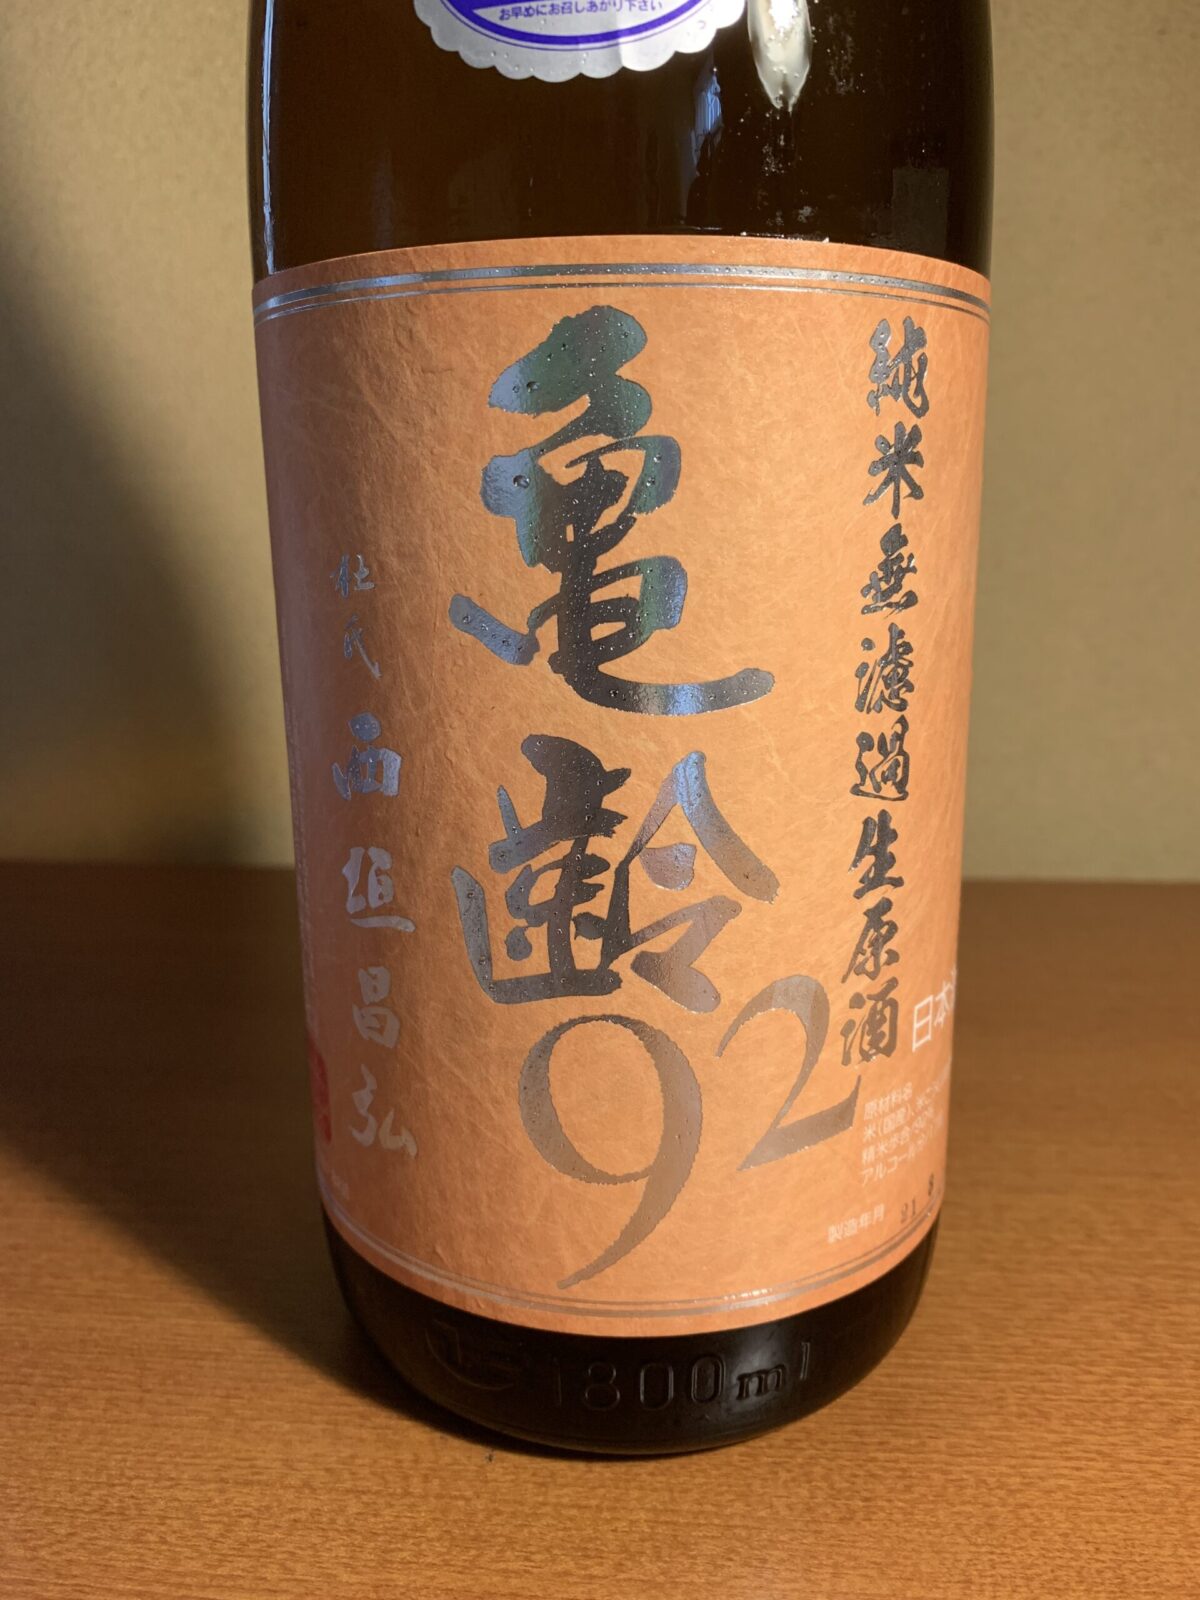 広島の日本酒『亀齢92』は、穏やかな香りと爽快な飲み口